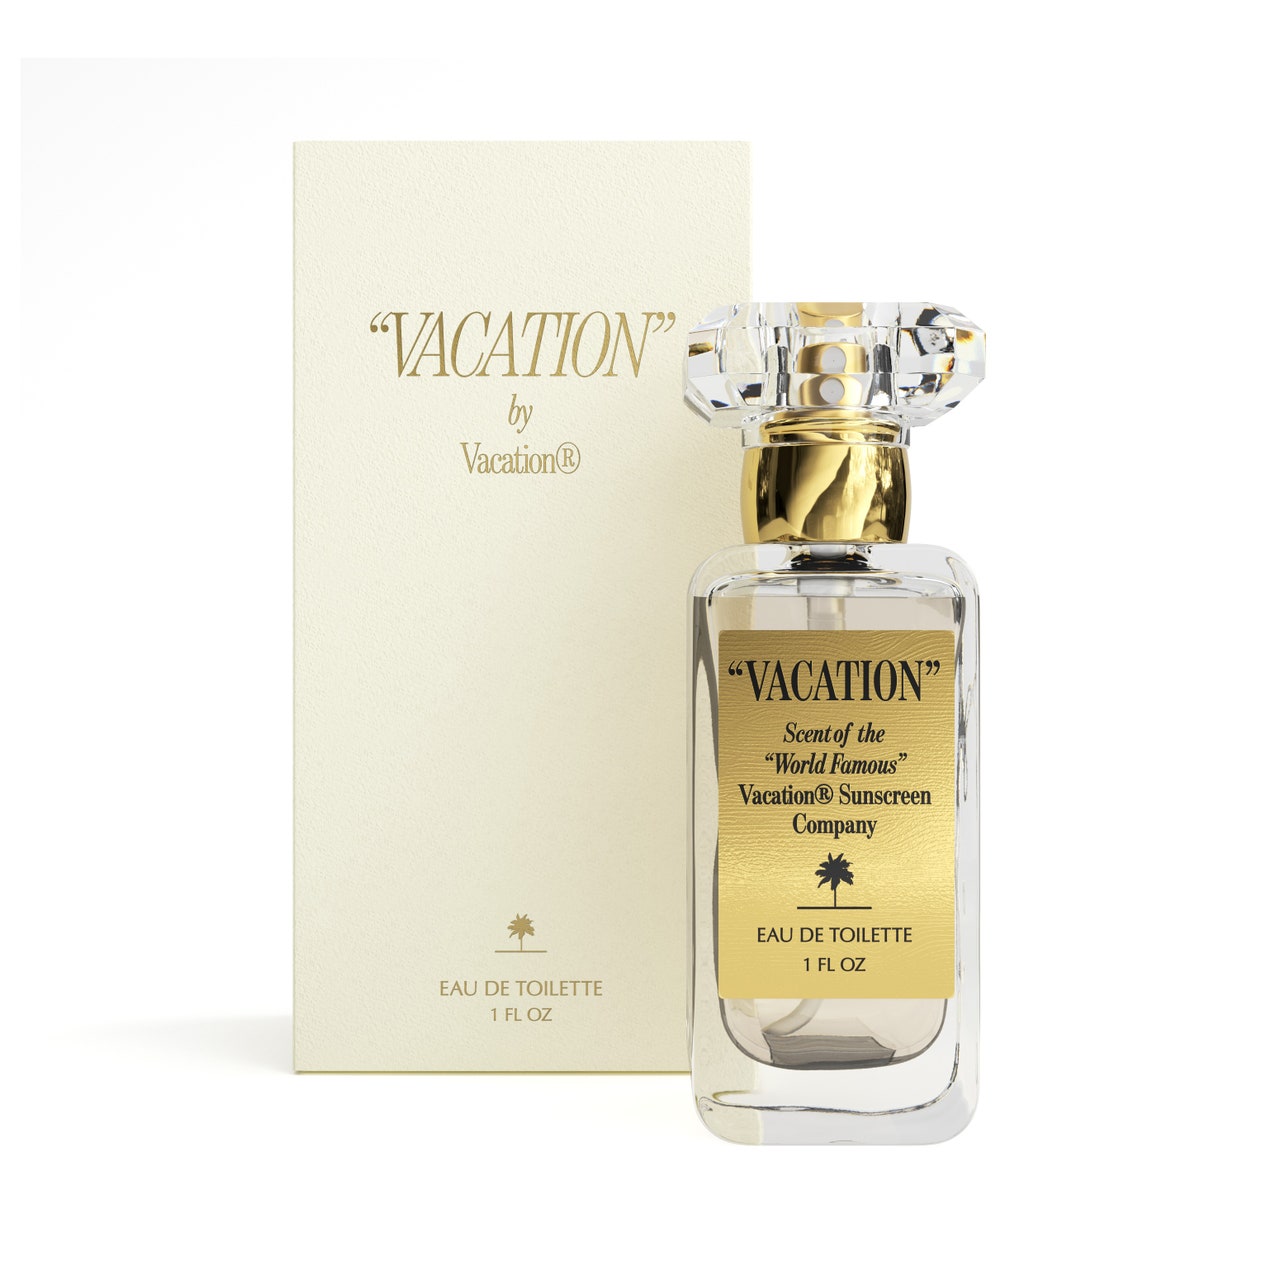 Vacation's Vacation Eau de Parfum Parfümflasche mit goldenem Etikett und Schachtel auf weißem Hintergrund